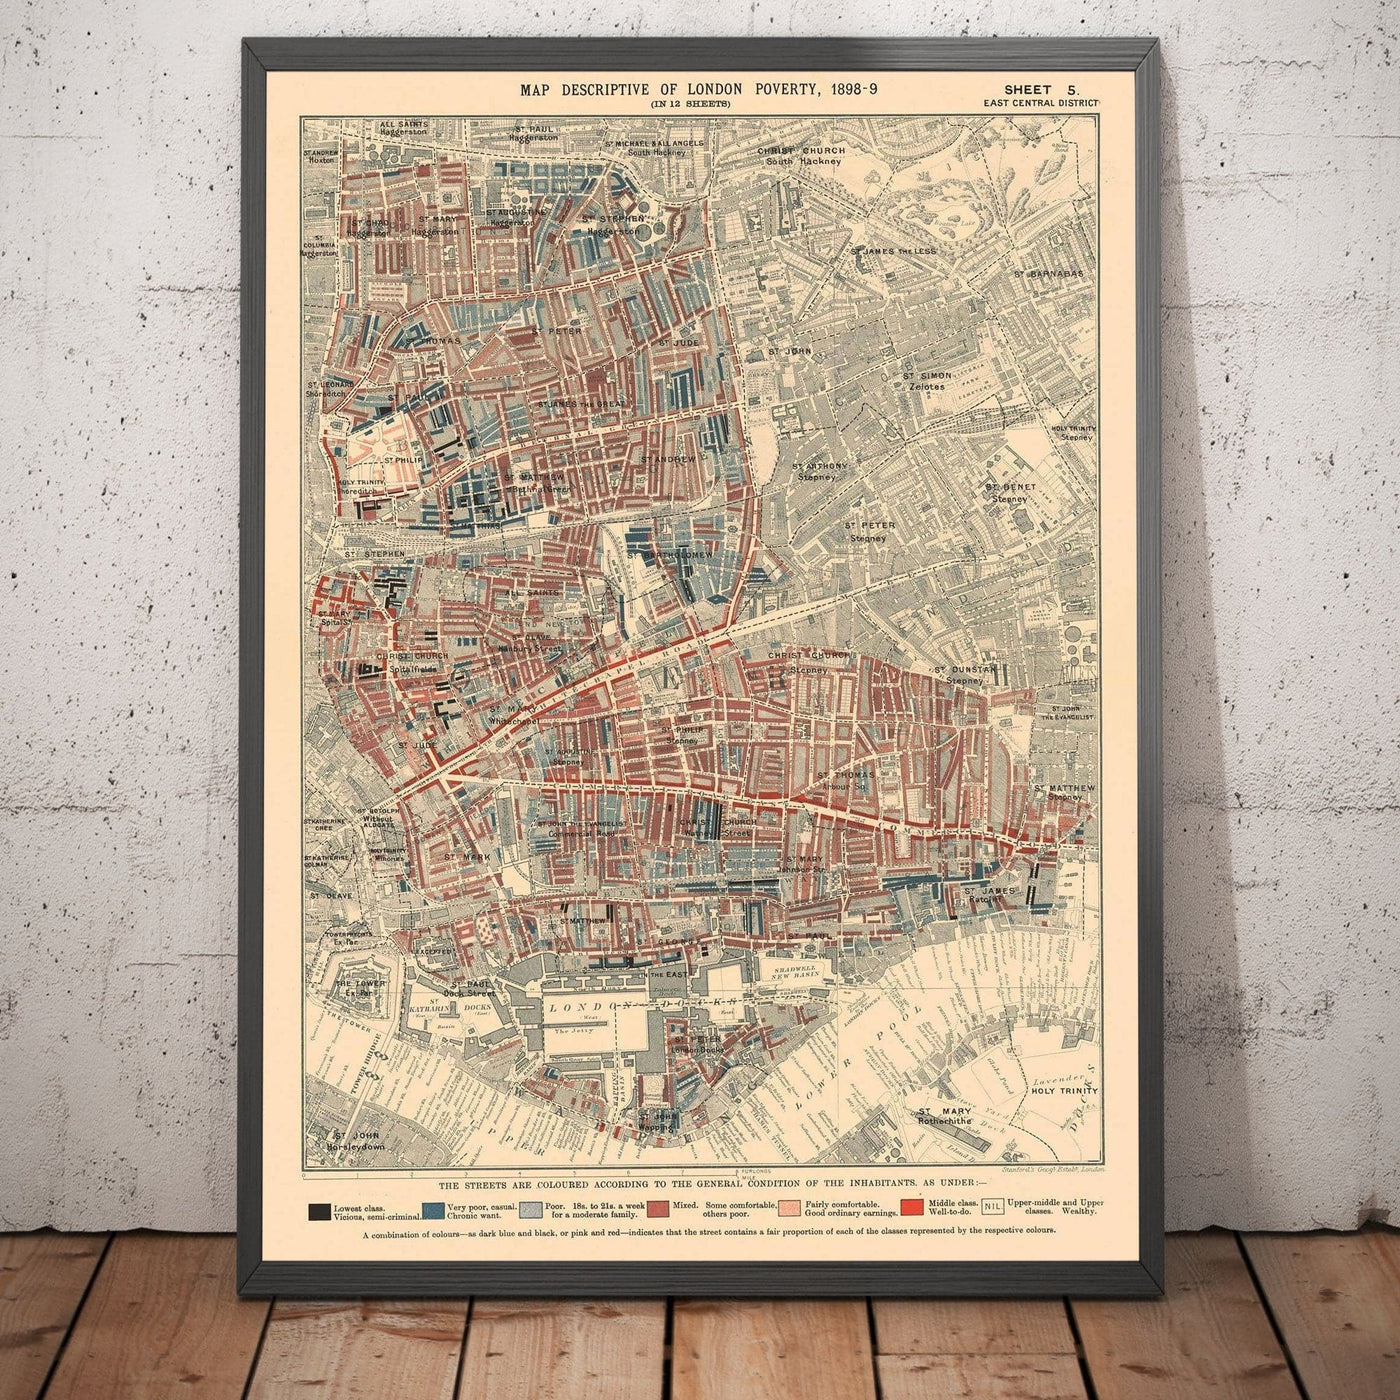 Carte de la pauvreté de Londres 1898-9, district du centre-est, par Charles Booth - Hackney, Shoreditch, Tower Hamlets - E2, E1, E1W, EC2, EC3